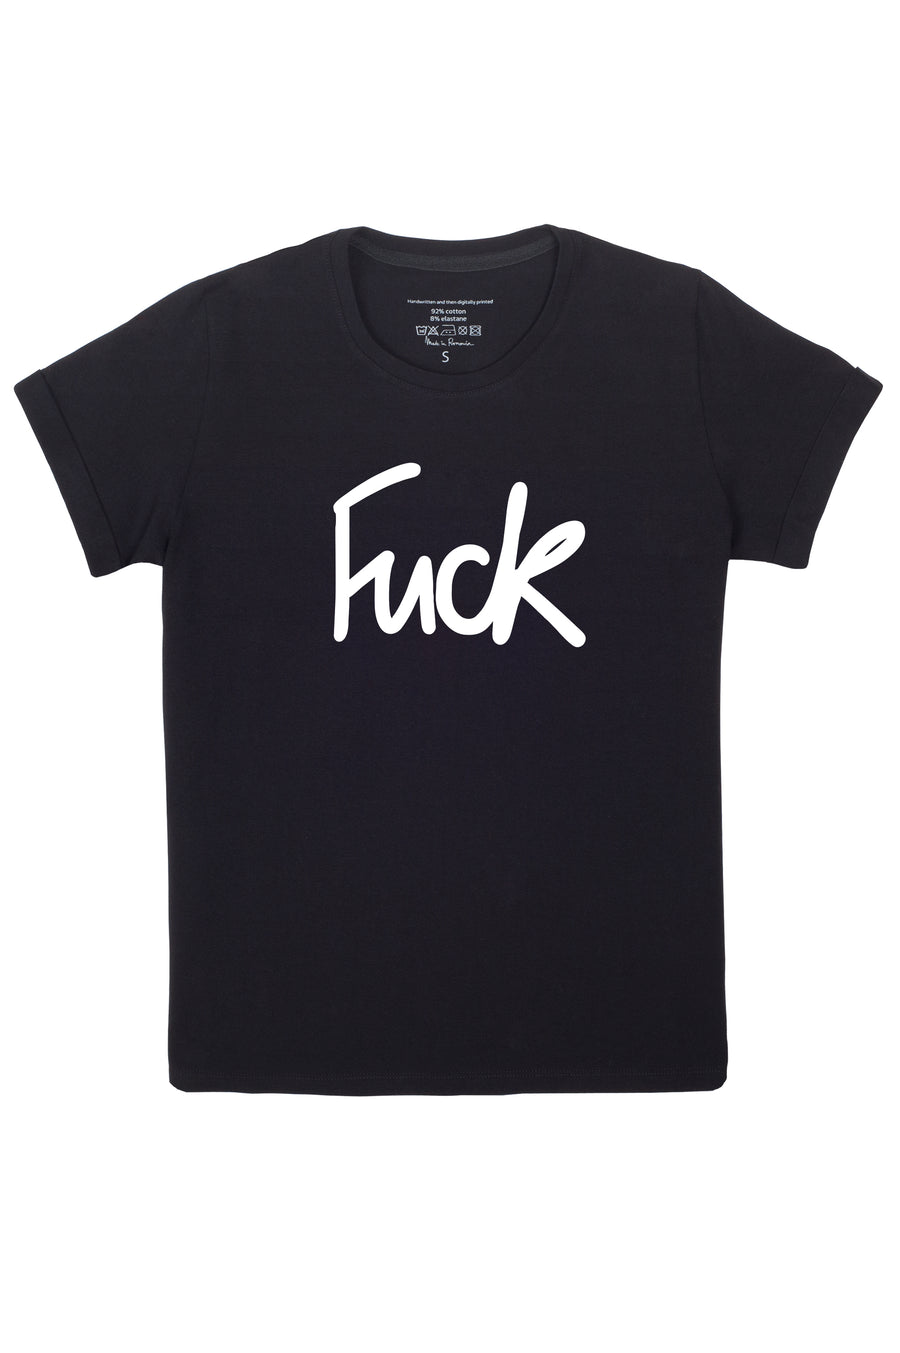 FUCK Tshirt Black version